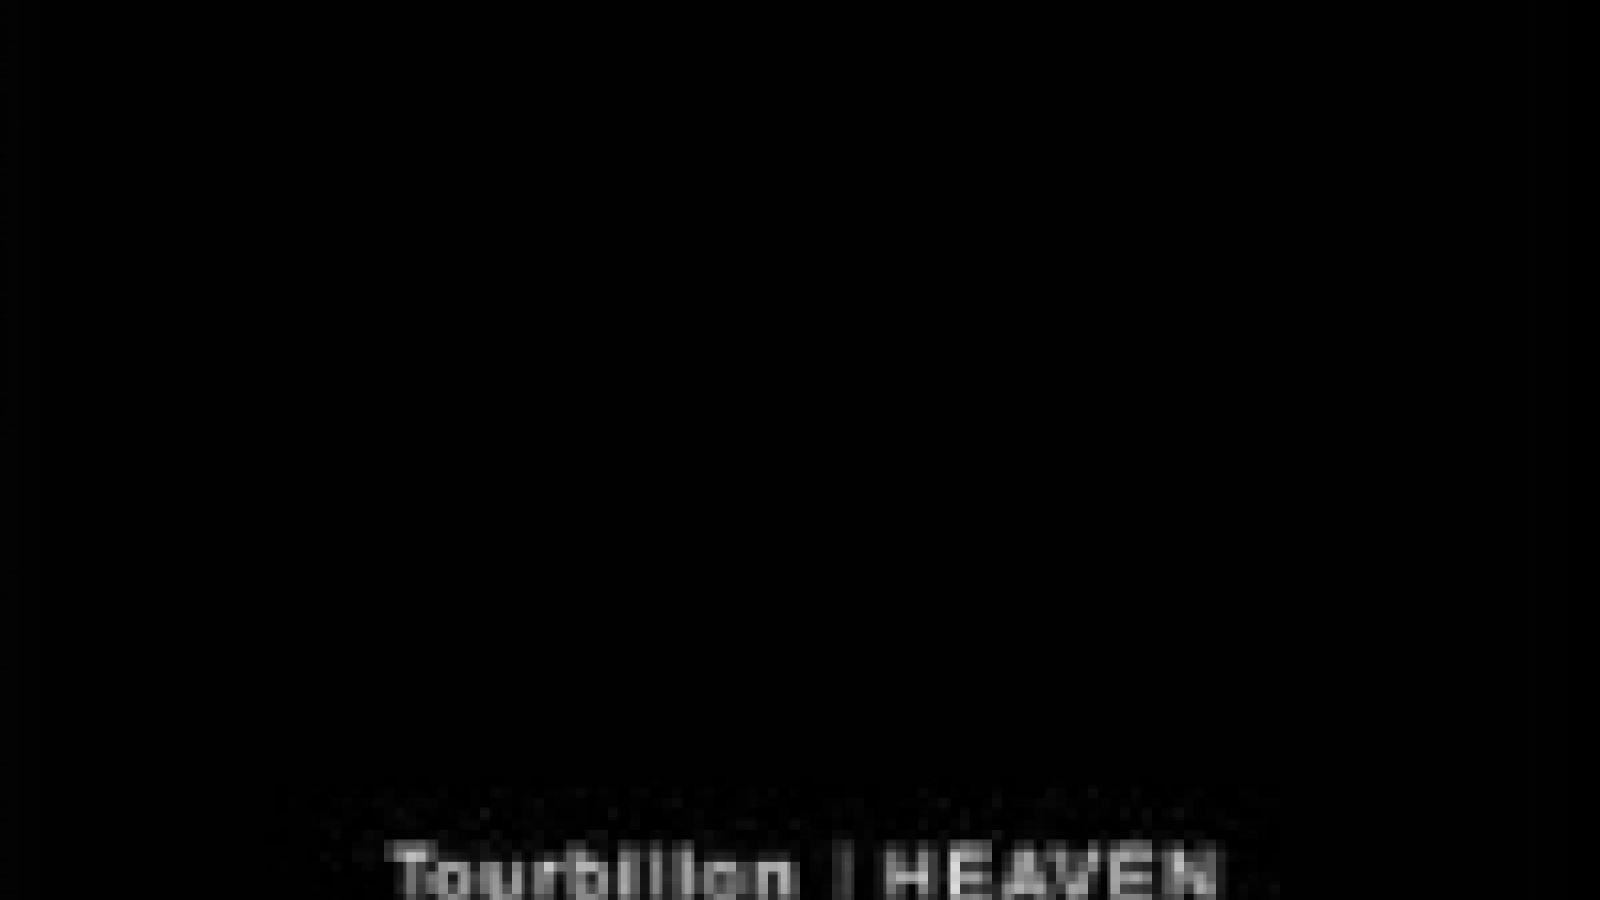 Tourbillon - HEAVEN © Pistol Valve